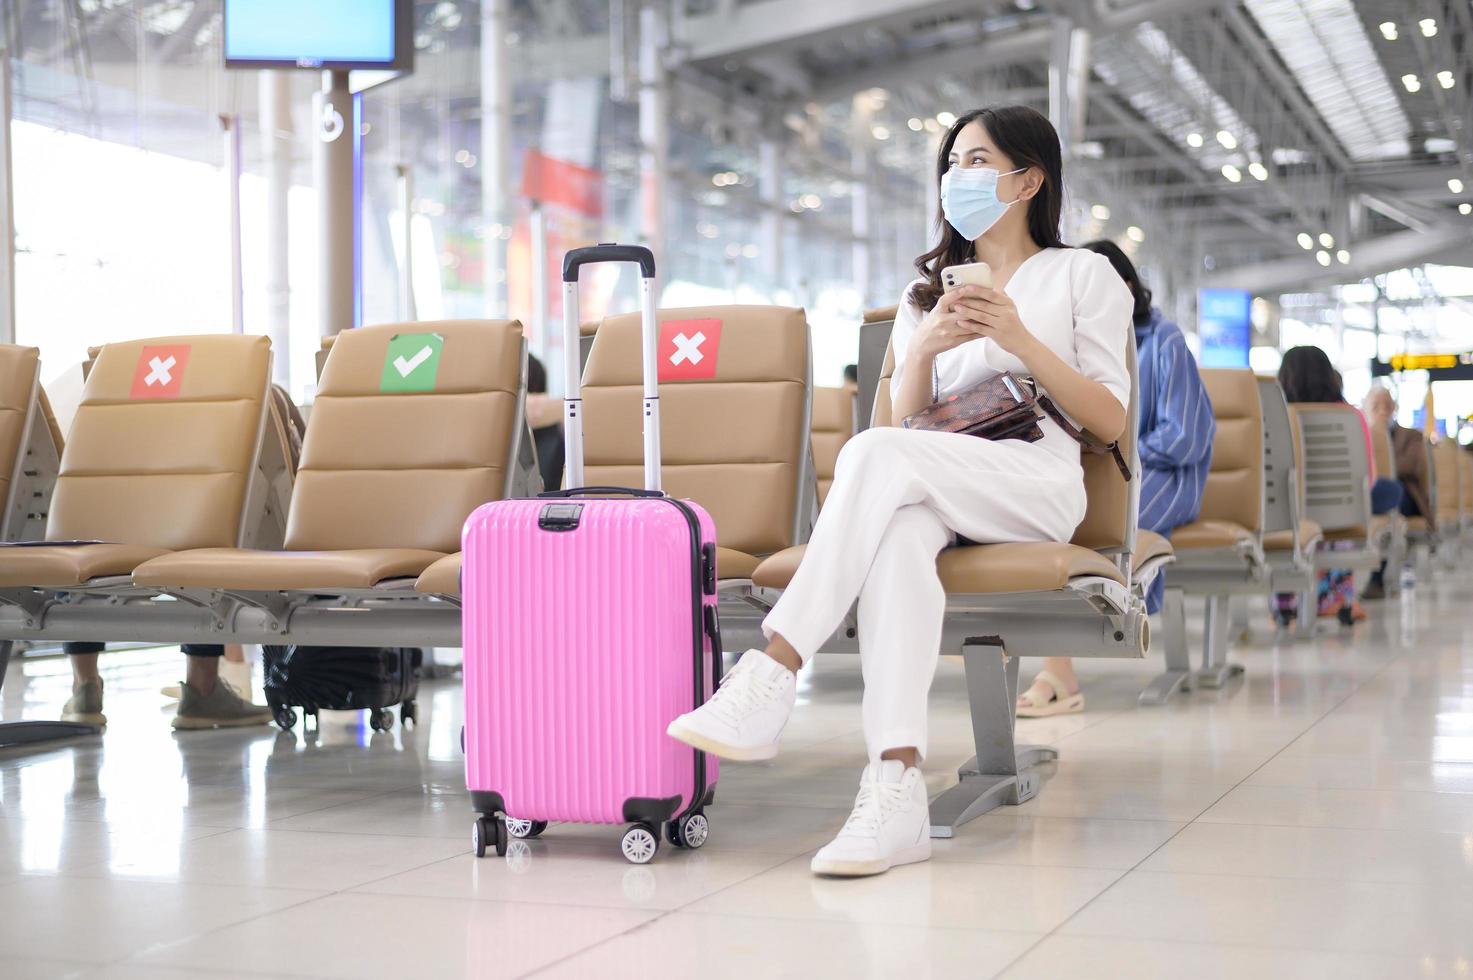 Eine reisende Frau trägt eine Schutzmaske auf dem internationalen Flughafen, reist unter der Covid-19-Pandemie, Sicherheitsreisen, Protokoll zur sozialen Distanzierung, neues normales Reisekonzept foto